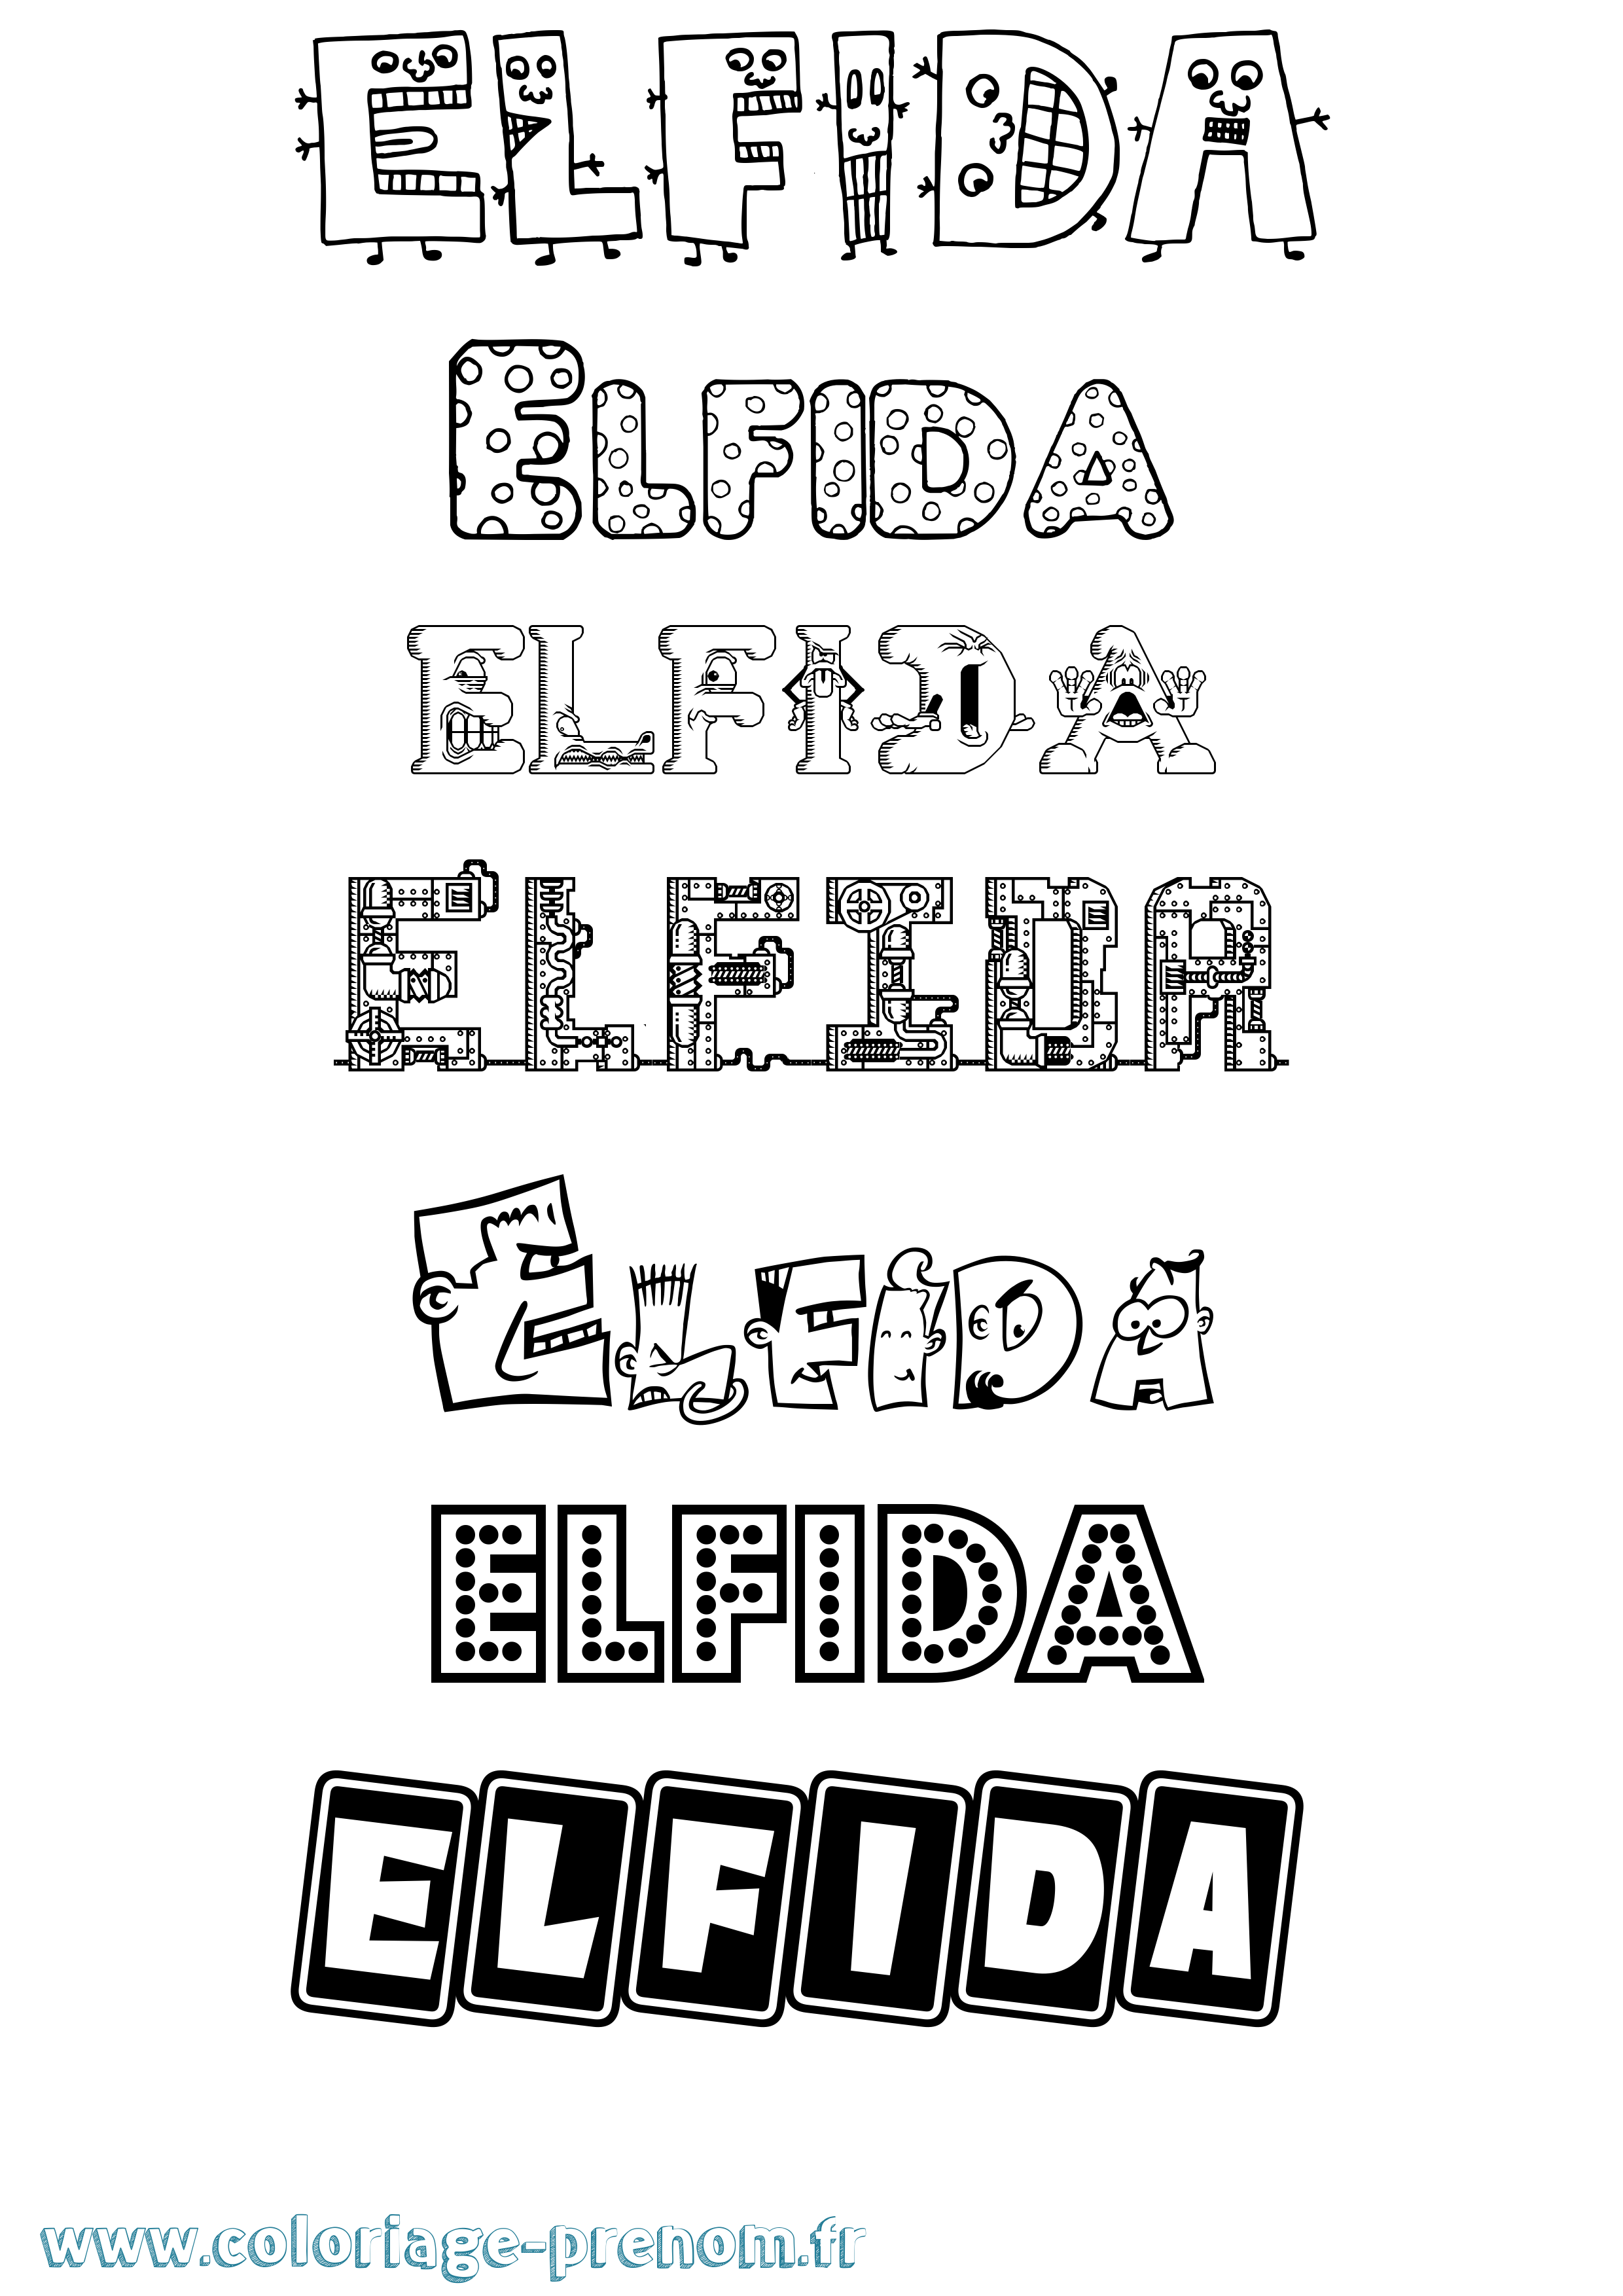 Coloriage prénom Elfida Fun